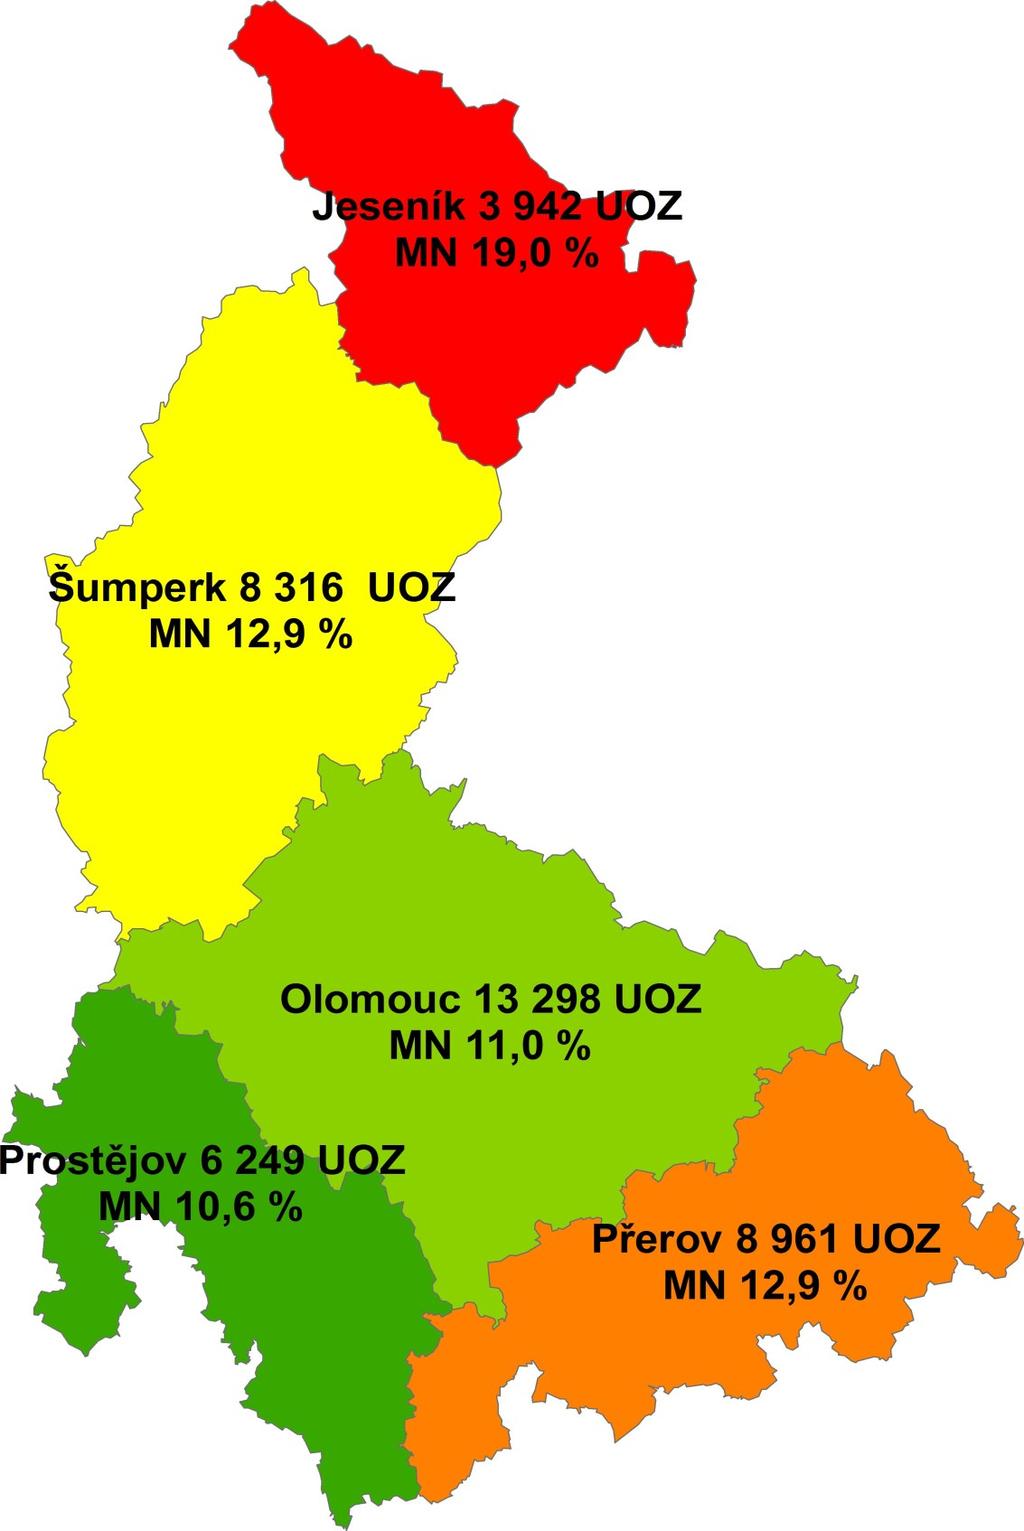 Strana č. 26 Mapa č. 6 Porovnání míry nezaměstnanosti v jednotlivých okresech kraje Okres Jeseník má nejvyšší míru nezaměstnanosti v ČR 19,0 %.